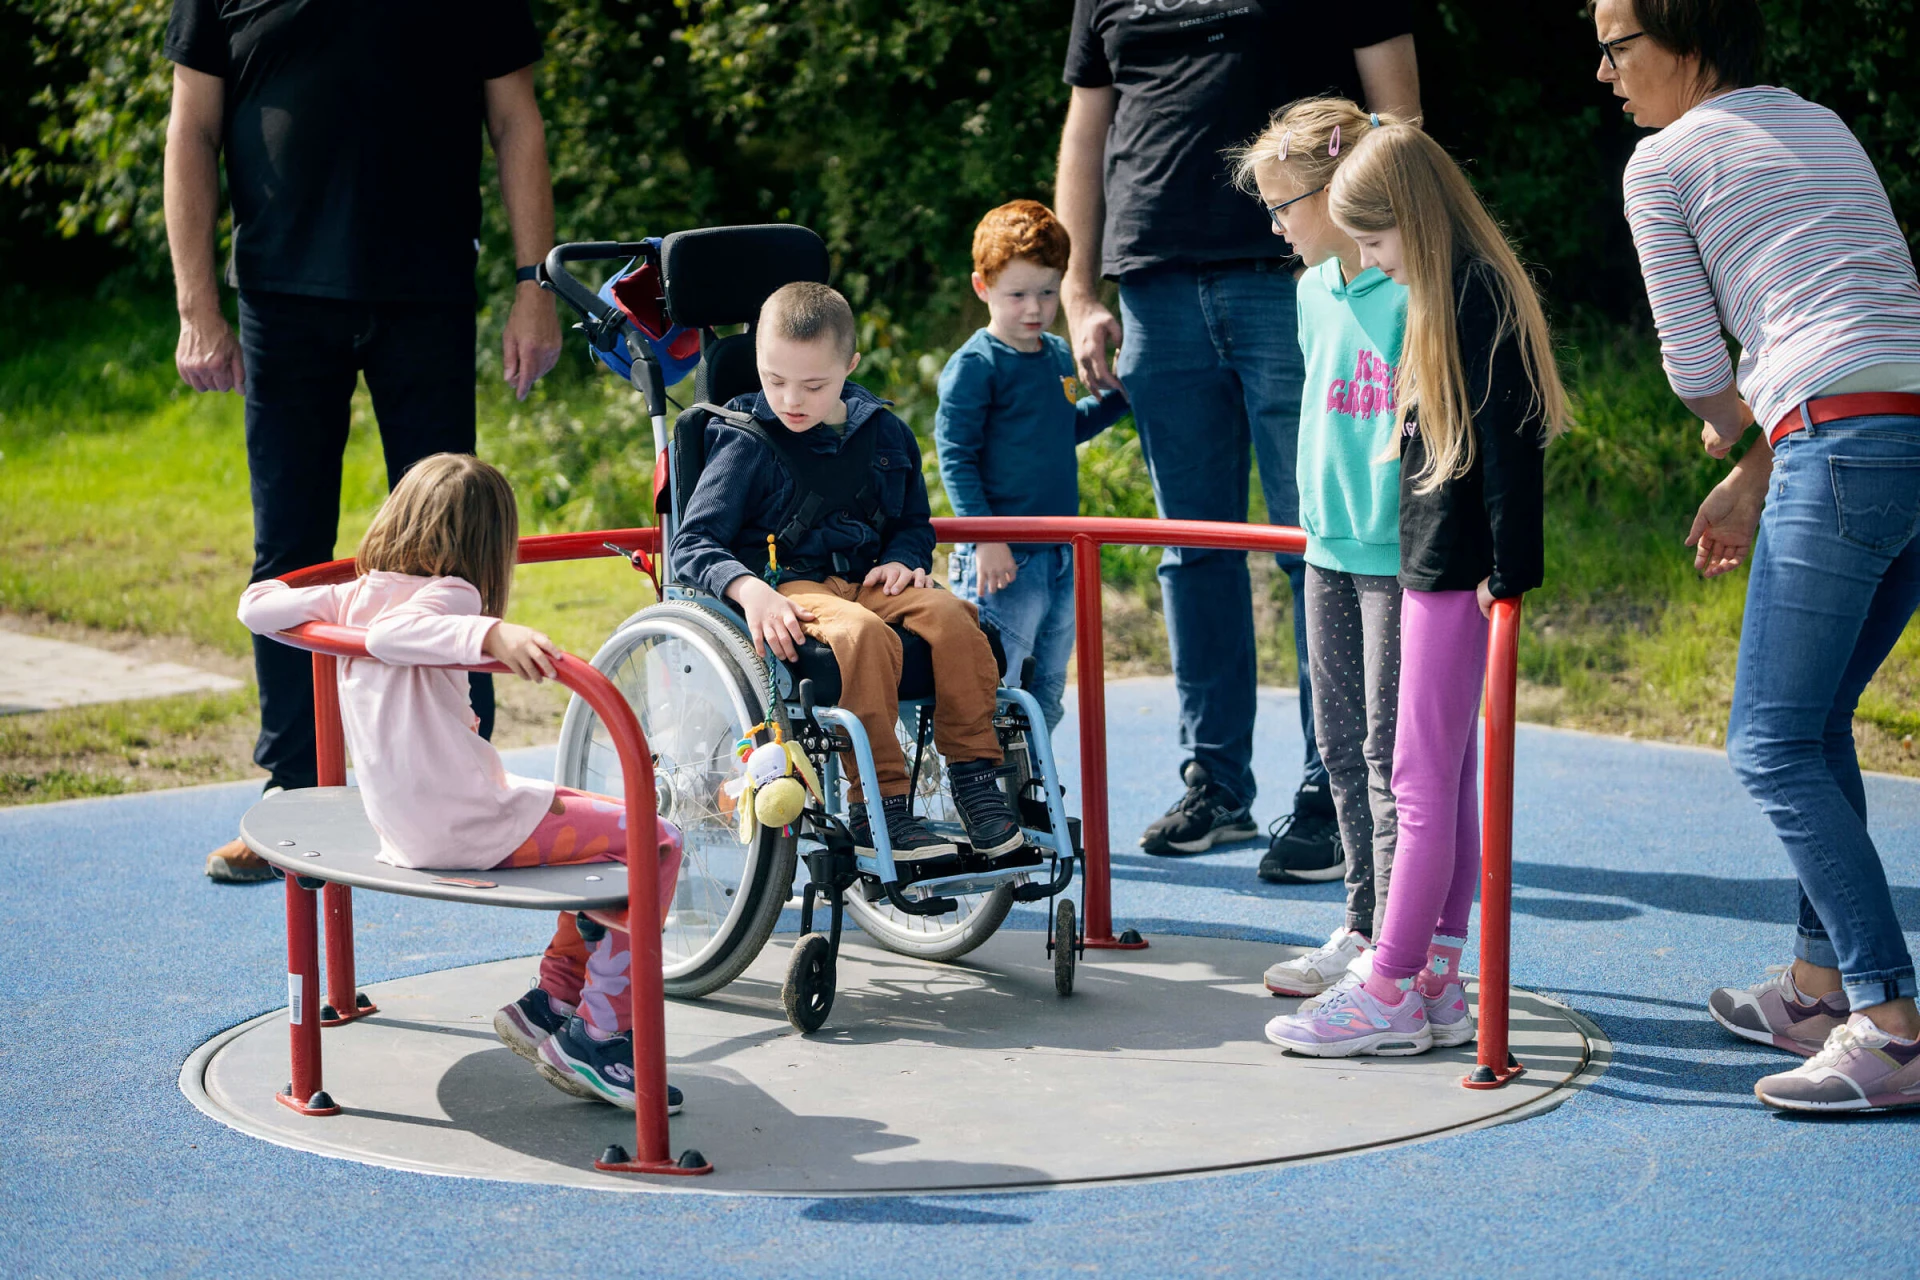 Enfants jouant sur un carrousel de fauteuils roulants dans une aire de jeux